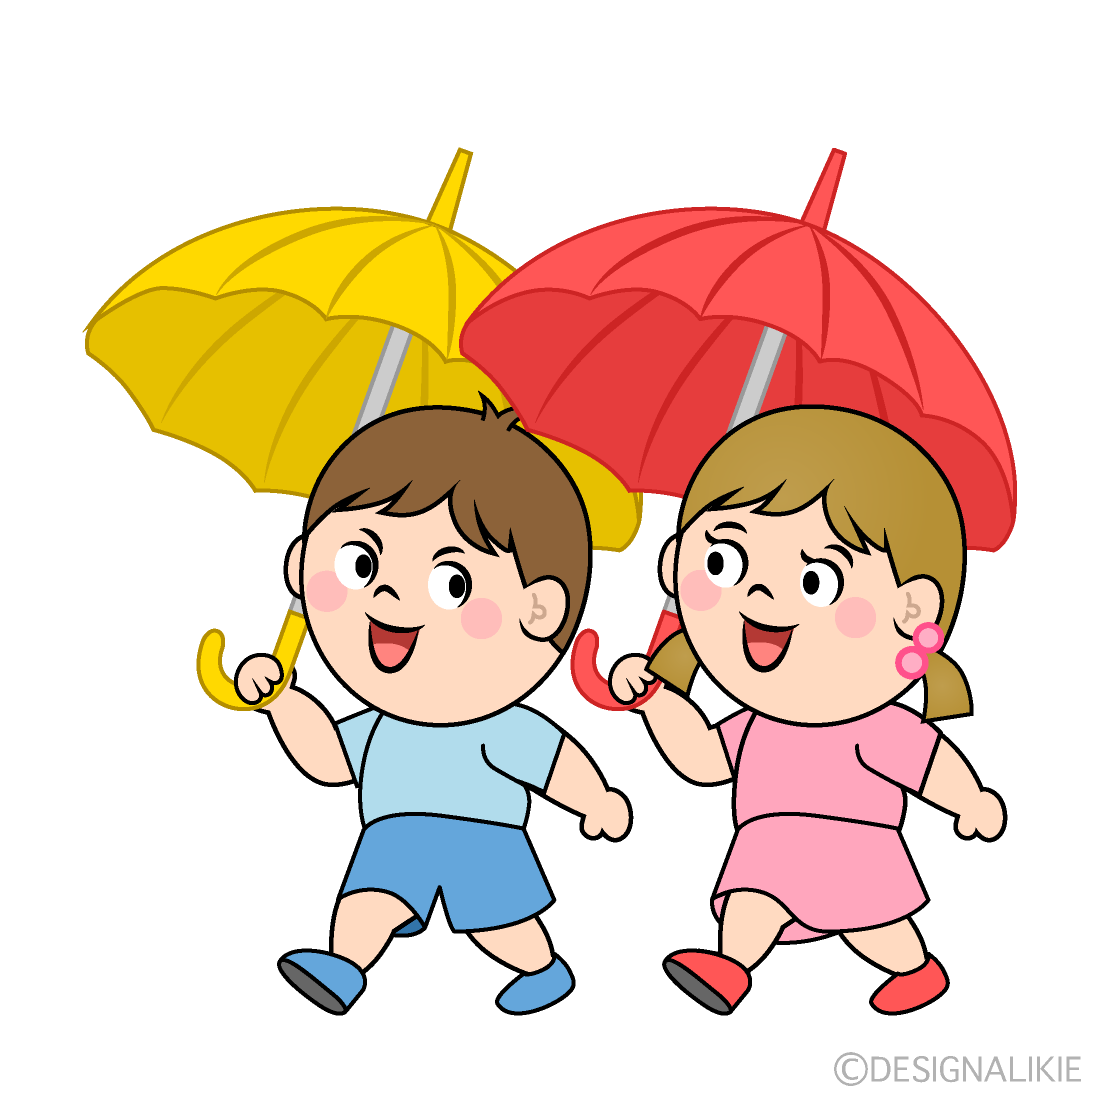 傘をさして歩く子供の無料イラスト素材 イラストイメージ